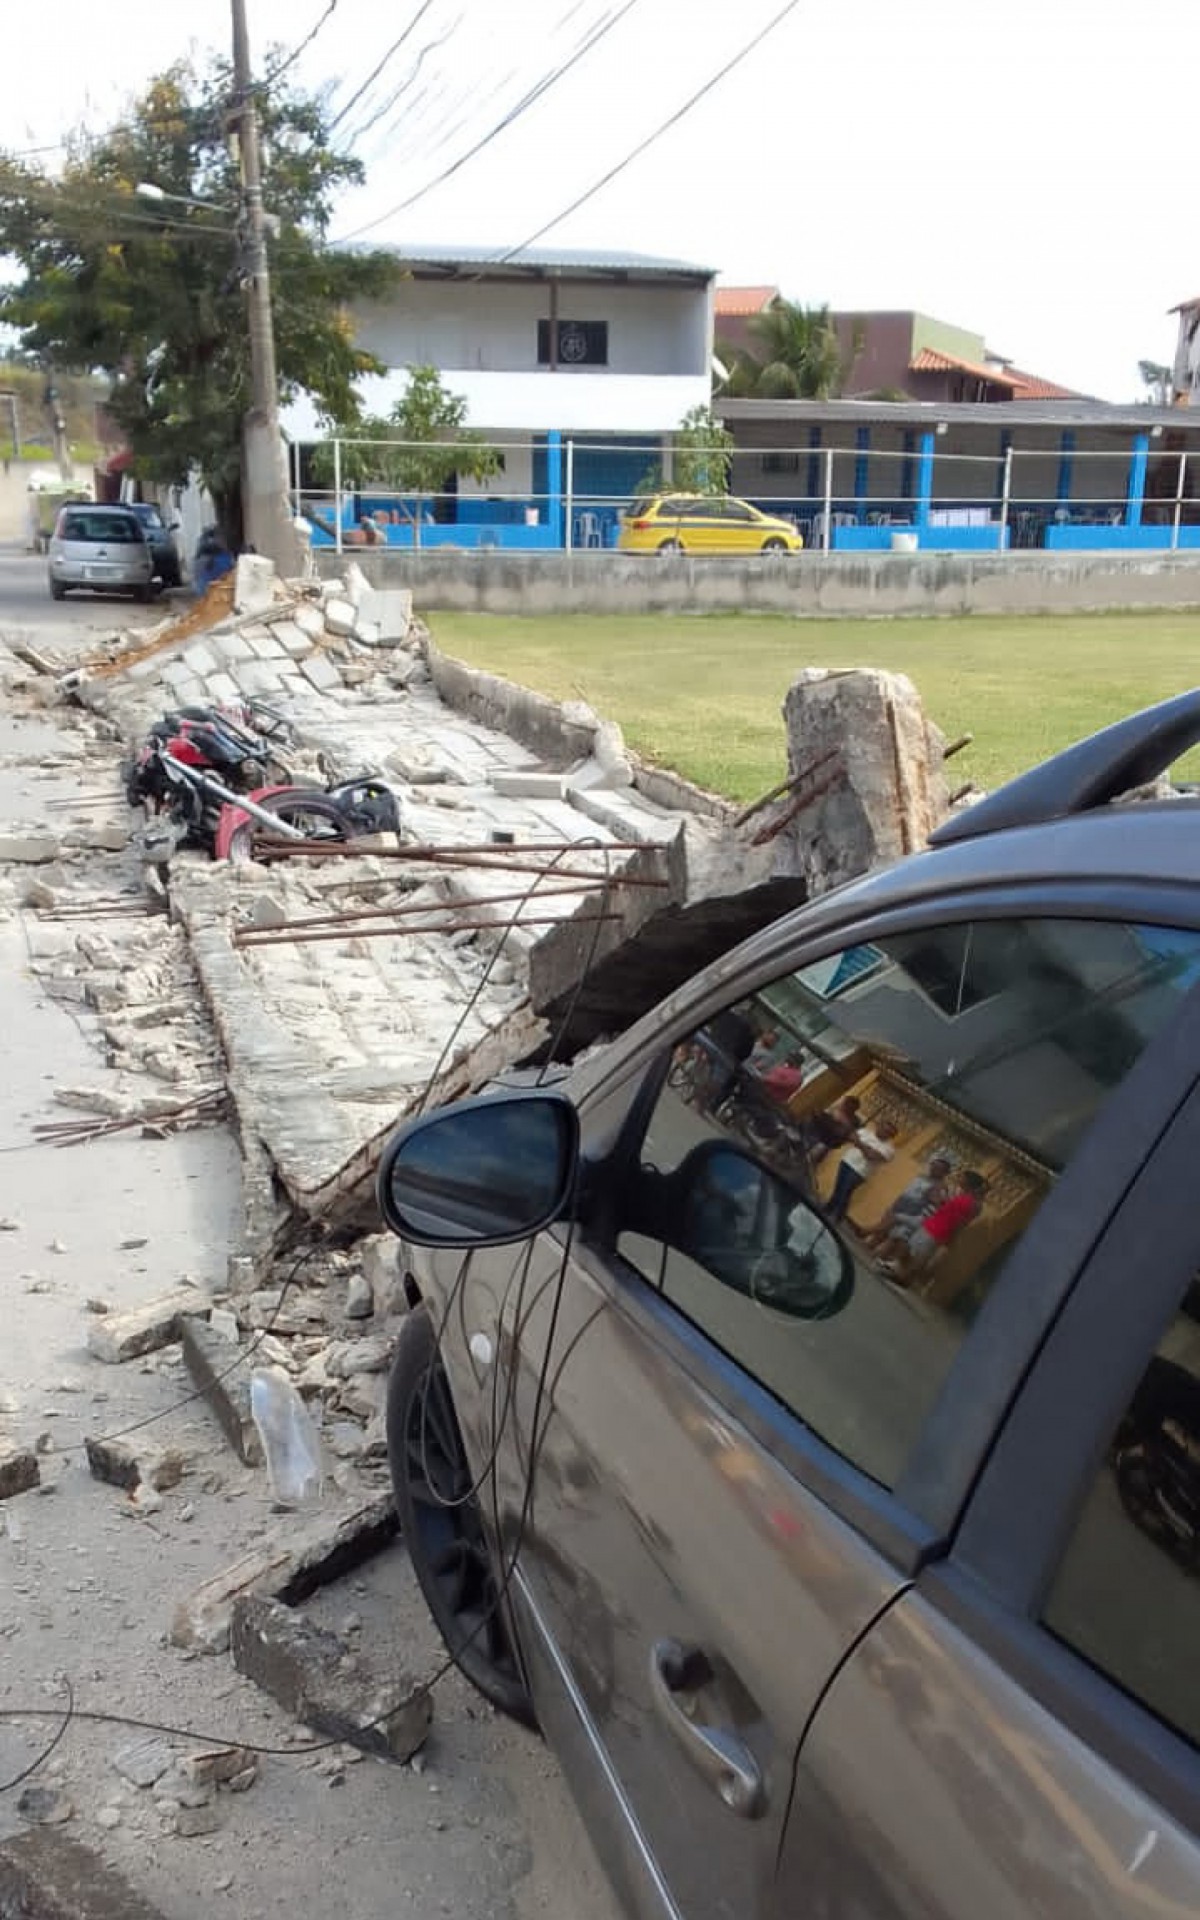 Ventos de 45km/h derrubam muro em São Pedro da Aldeia e causam estrago - Ludmila Lopes (RC24h)